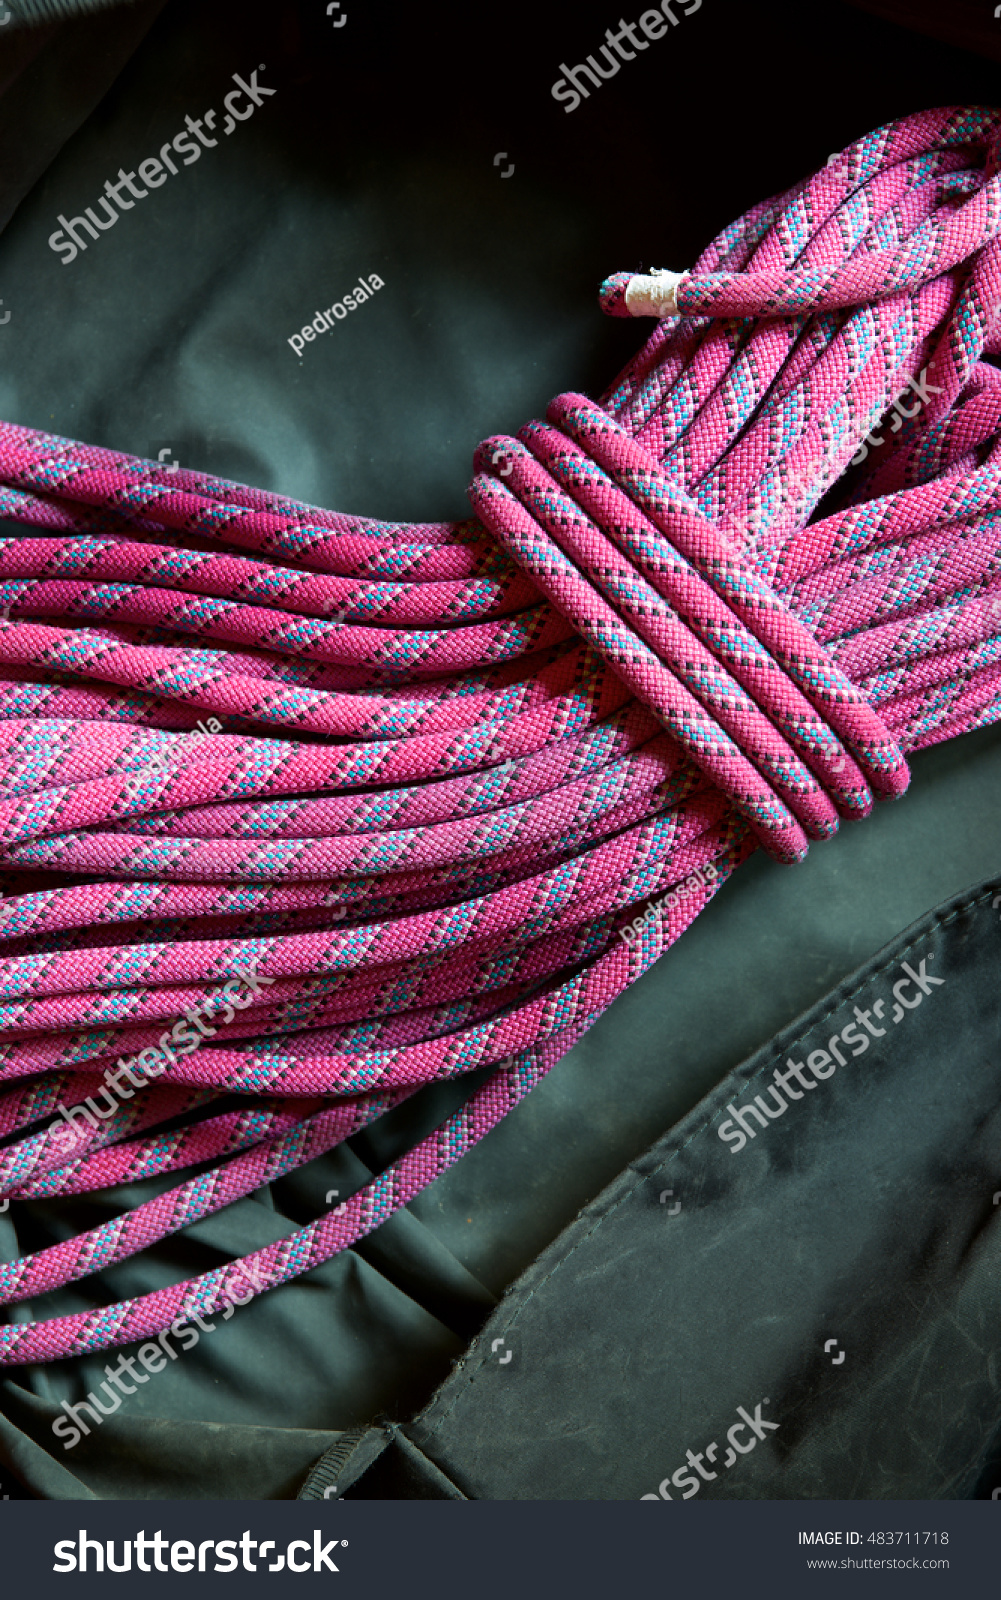 pink climbing rope